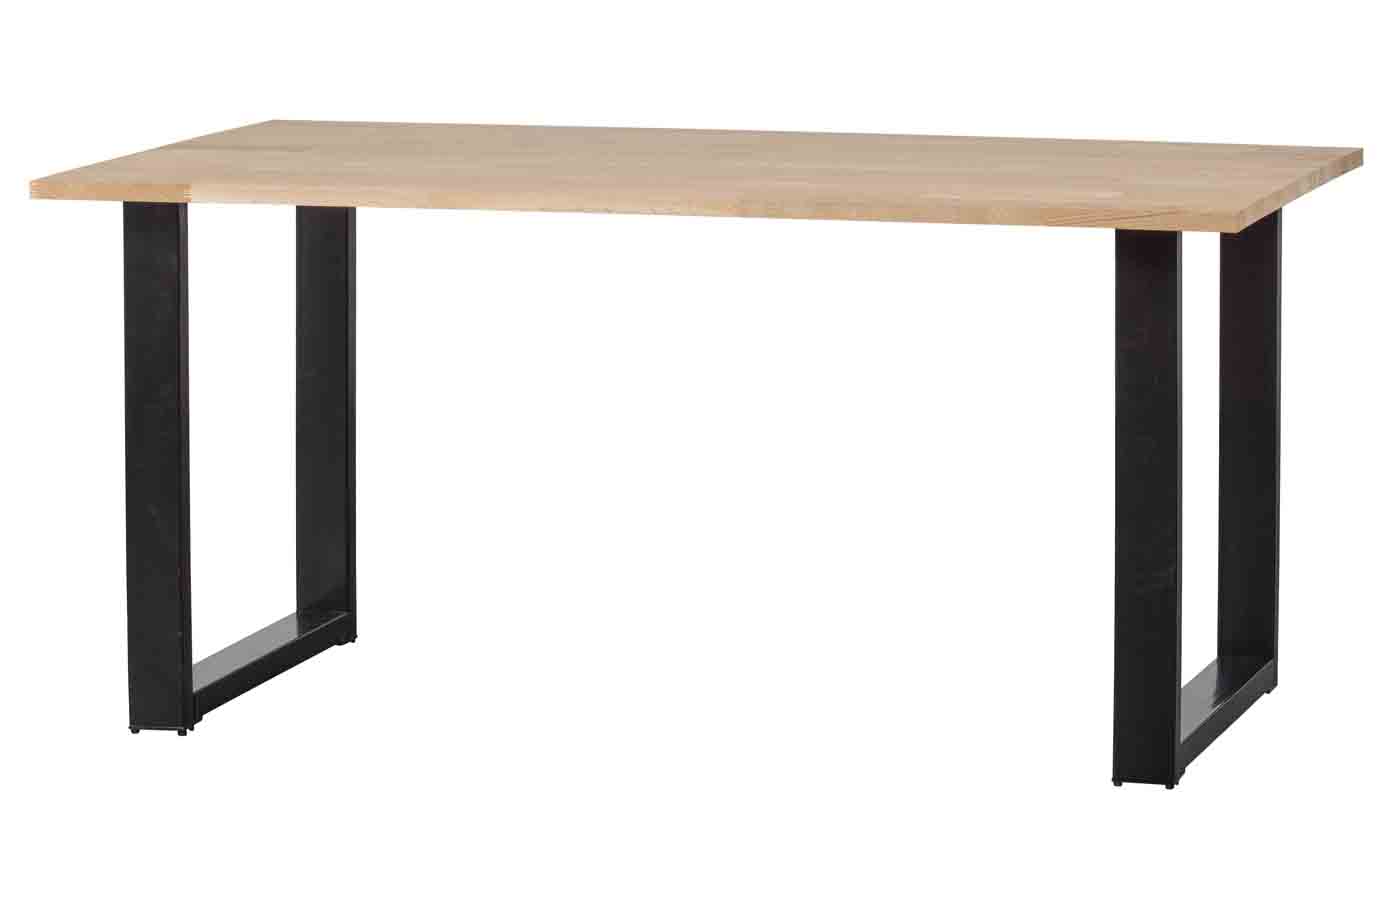 Esstisch mit Eiche Tischplatte und U-Gestell. Oberfläche Natur unbehandelt mit einer schönen Maserung